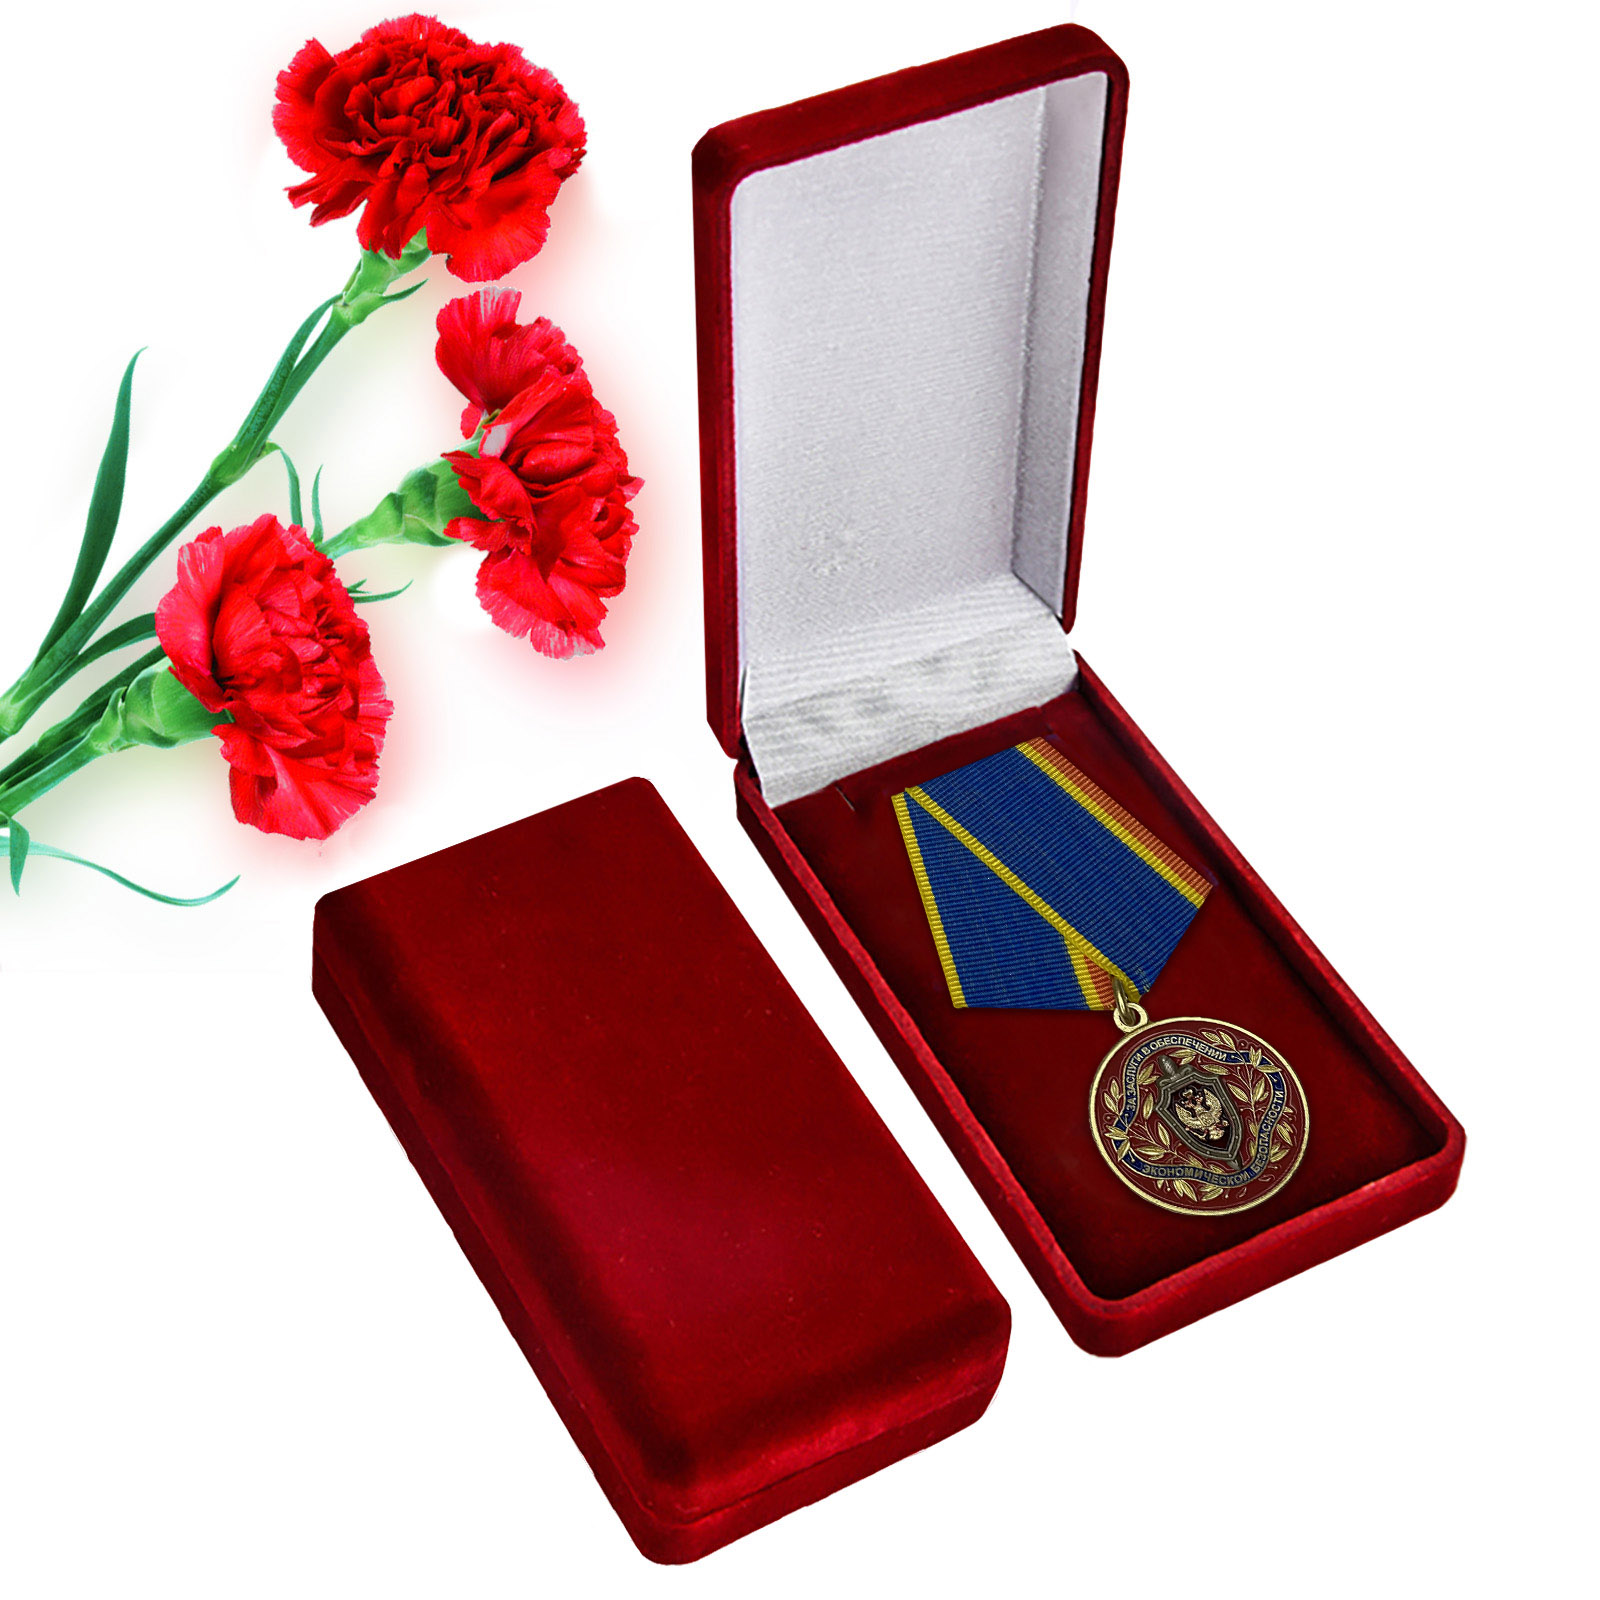 Медаль "За заслуги в обеспечении экономической безопасности"